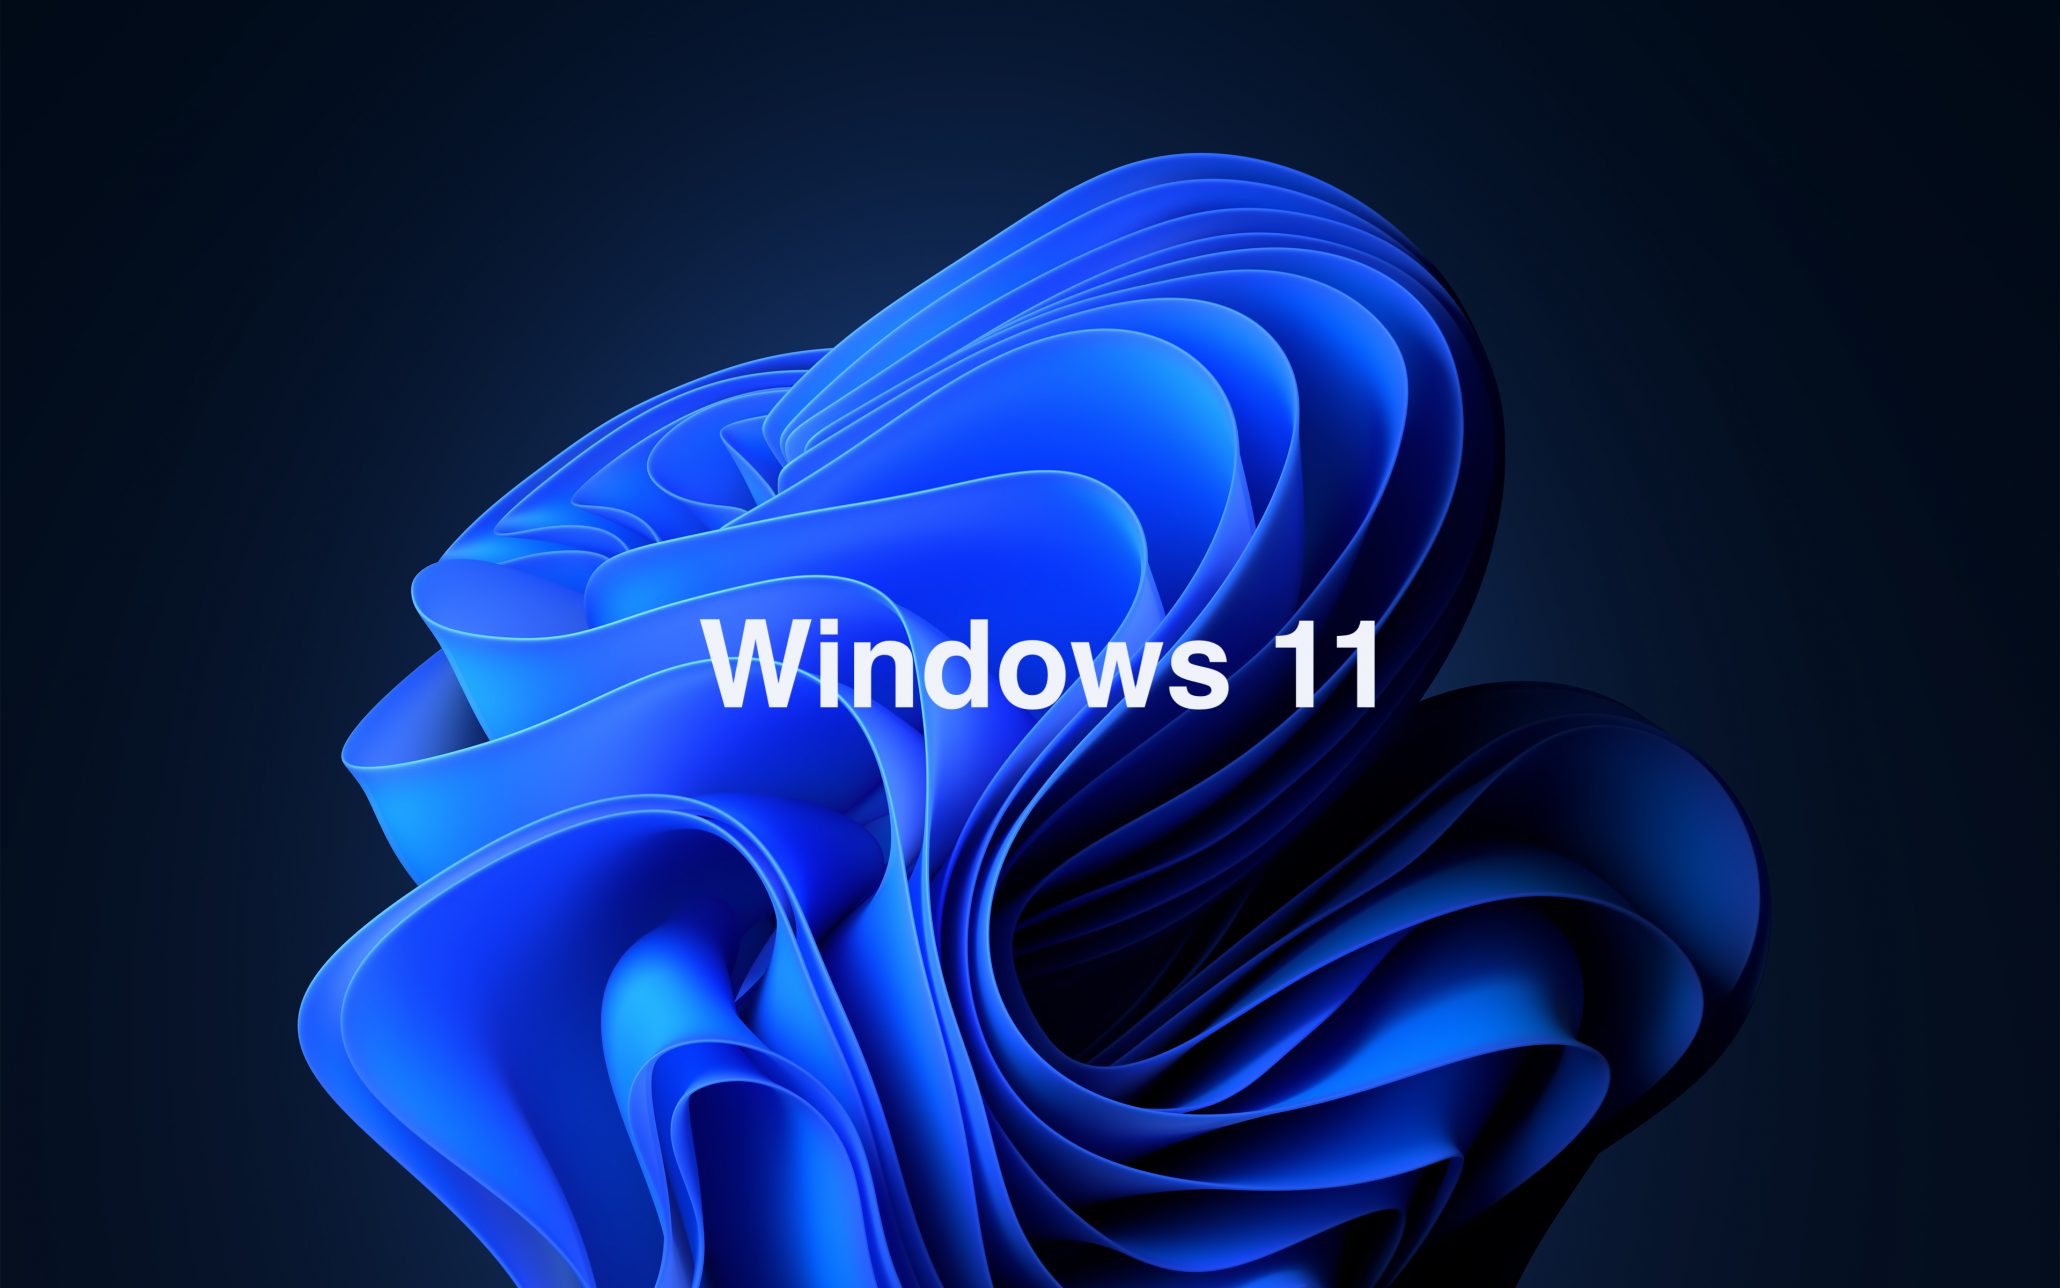 Hướng dẫn thay đổi biểu tượng yêu thích trên Windows 11 - Fptshop.com.vn